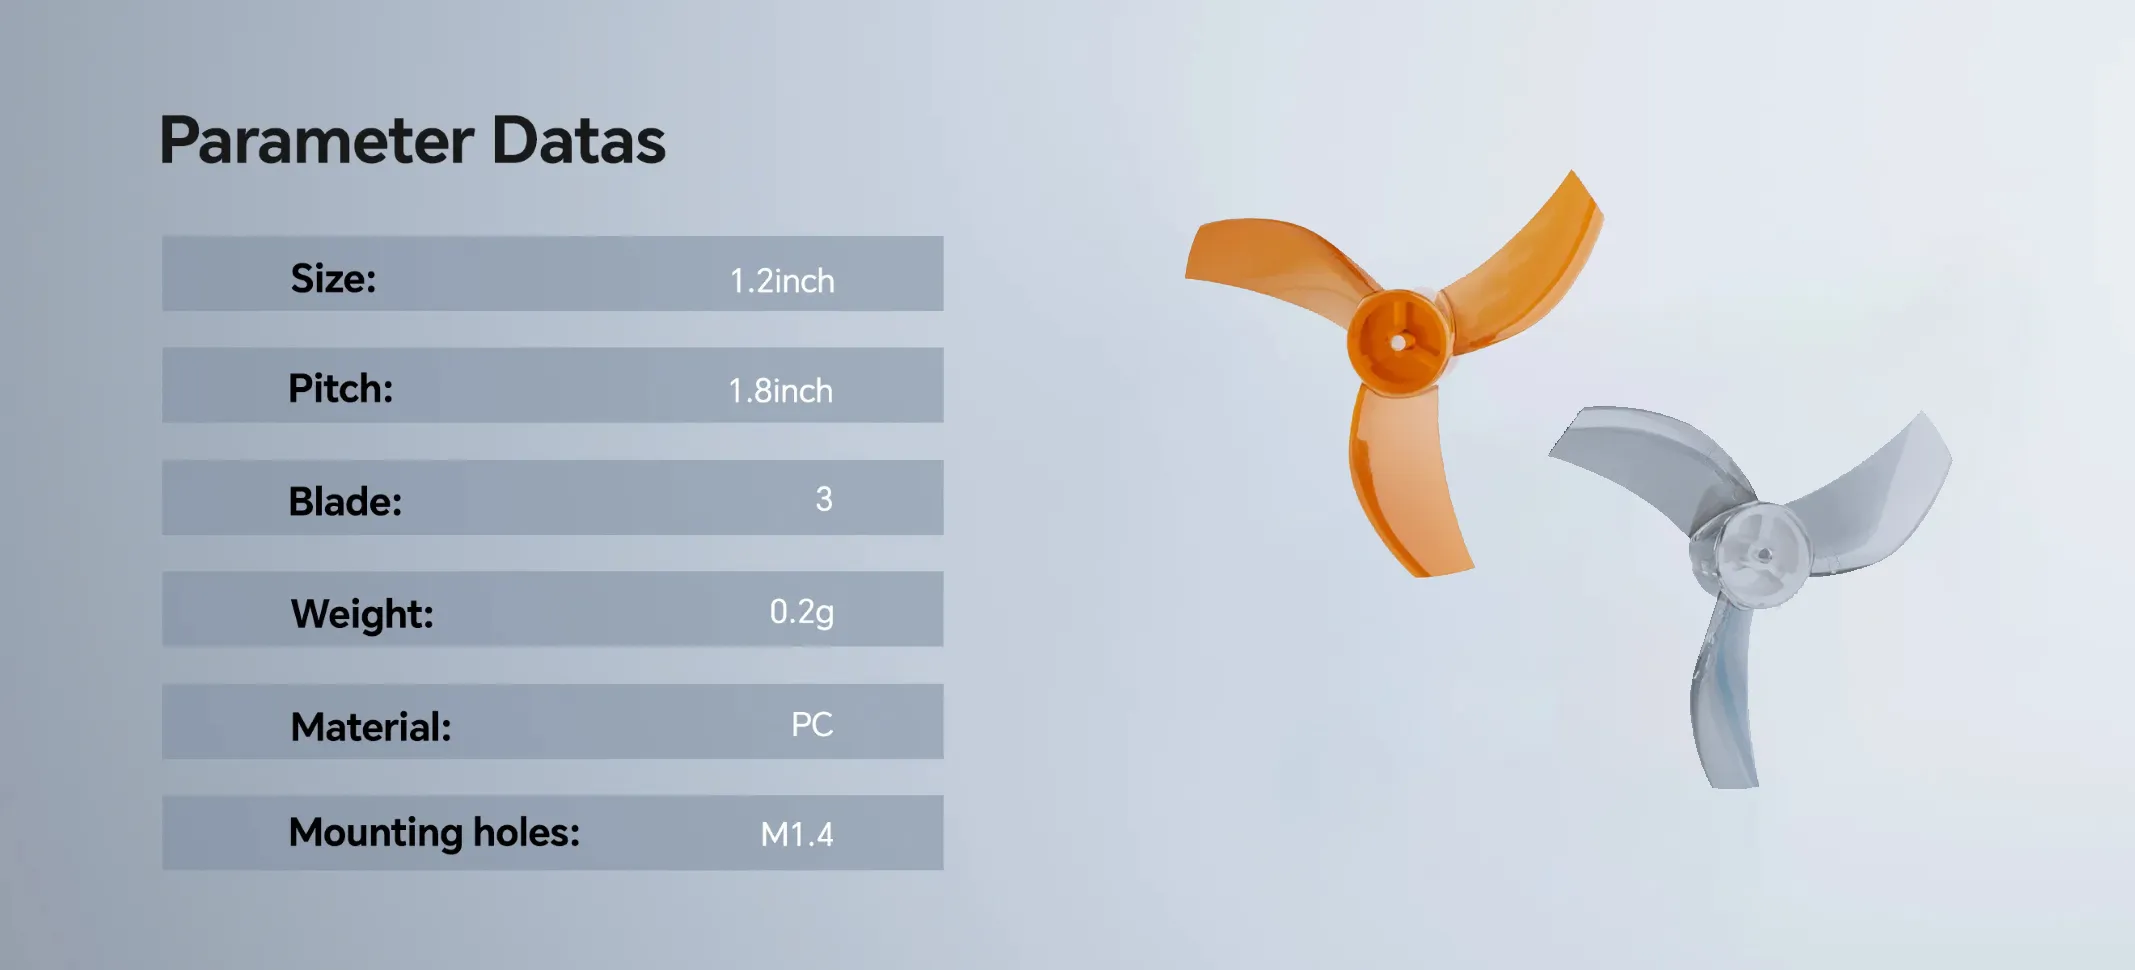 MEPS sz1218 propeller parameter datas